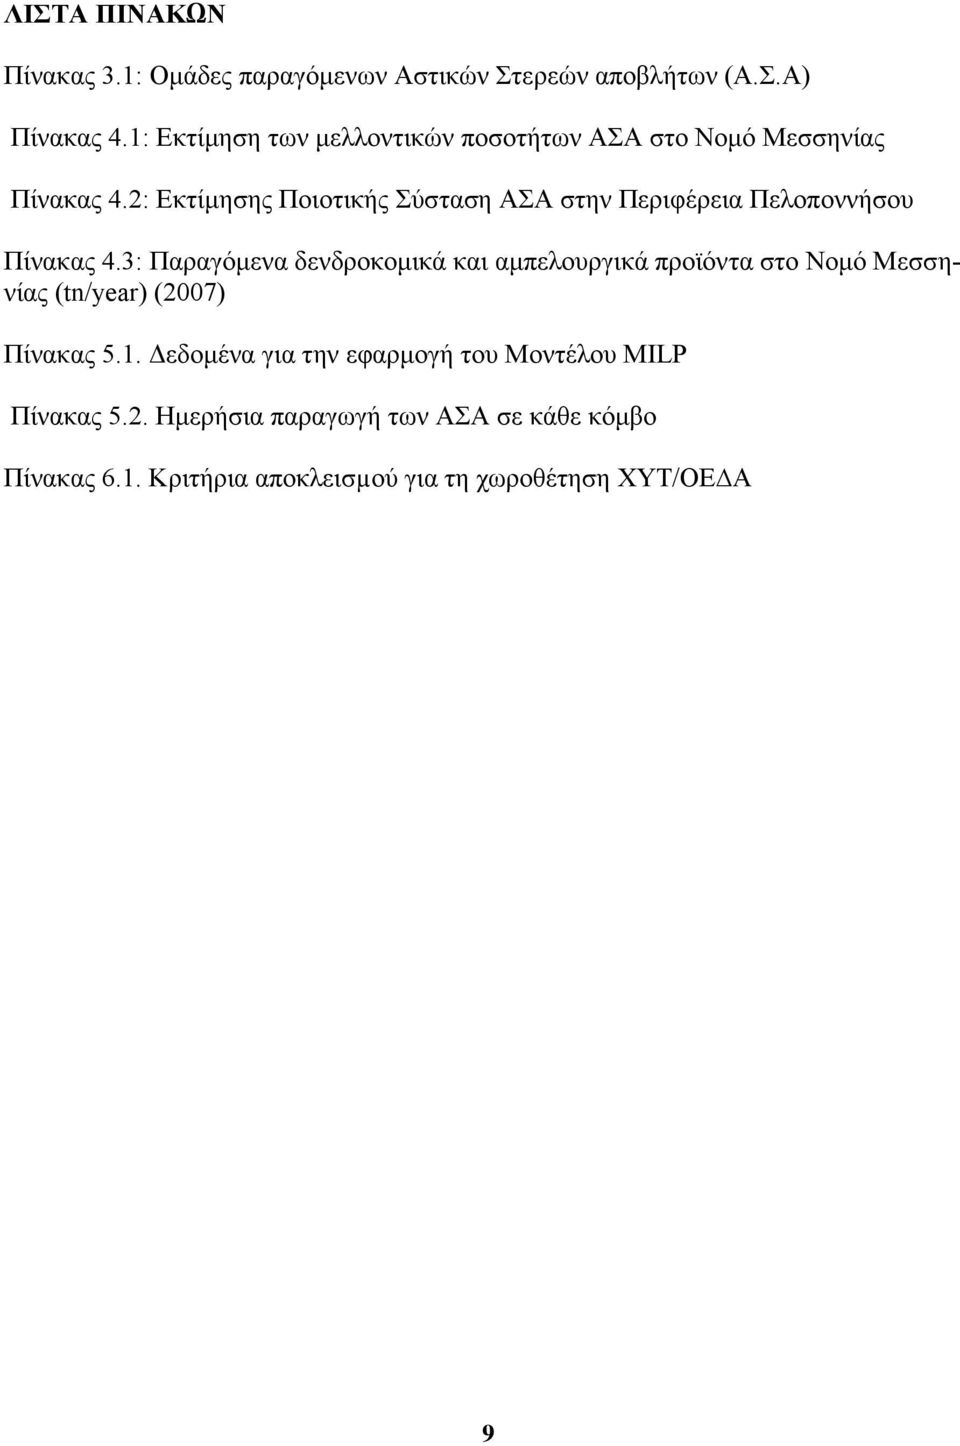 2: Εκτίμησης Ποιοτικής Σύσταση ΑΣΑ στην Περιφέρεια Πελοποννήσου Πίνακας 4.